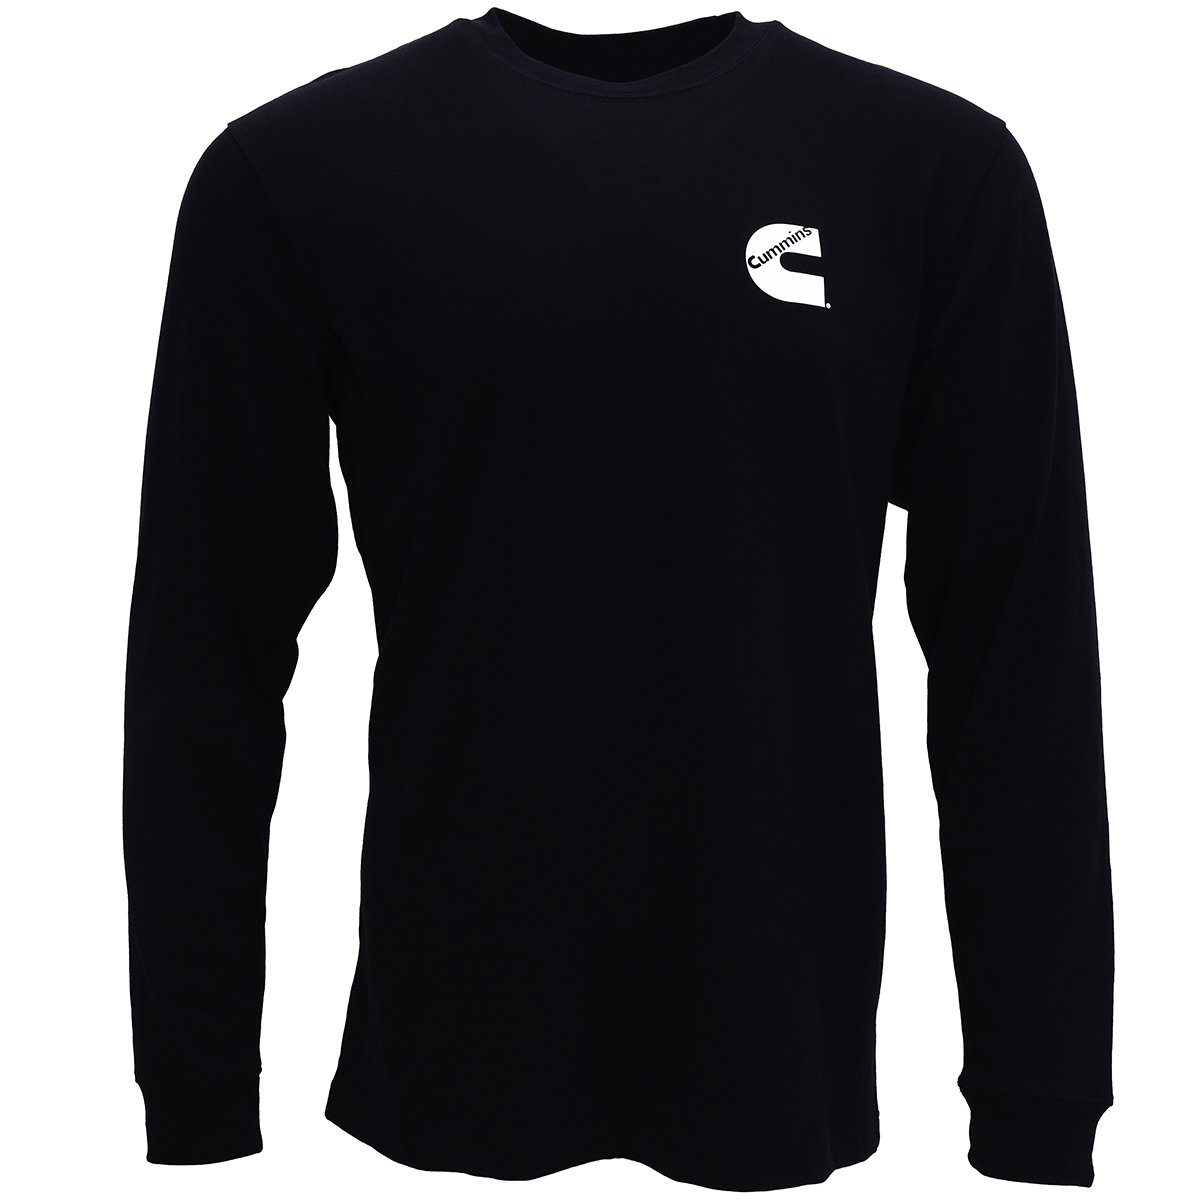 Cummins Unisex Long Sleeve T-shirt Black All Cotton Tee CMN4778 - XL